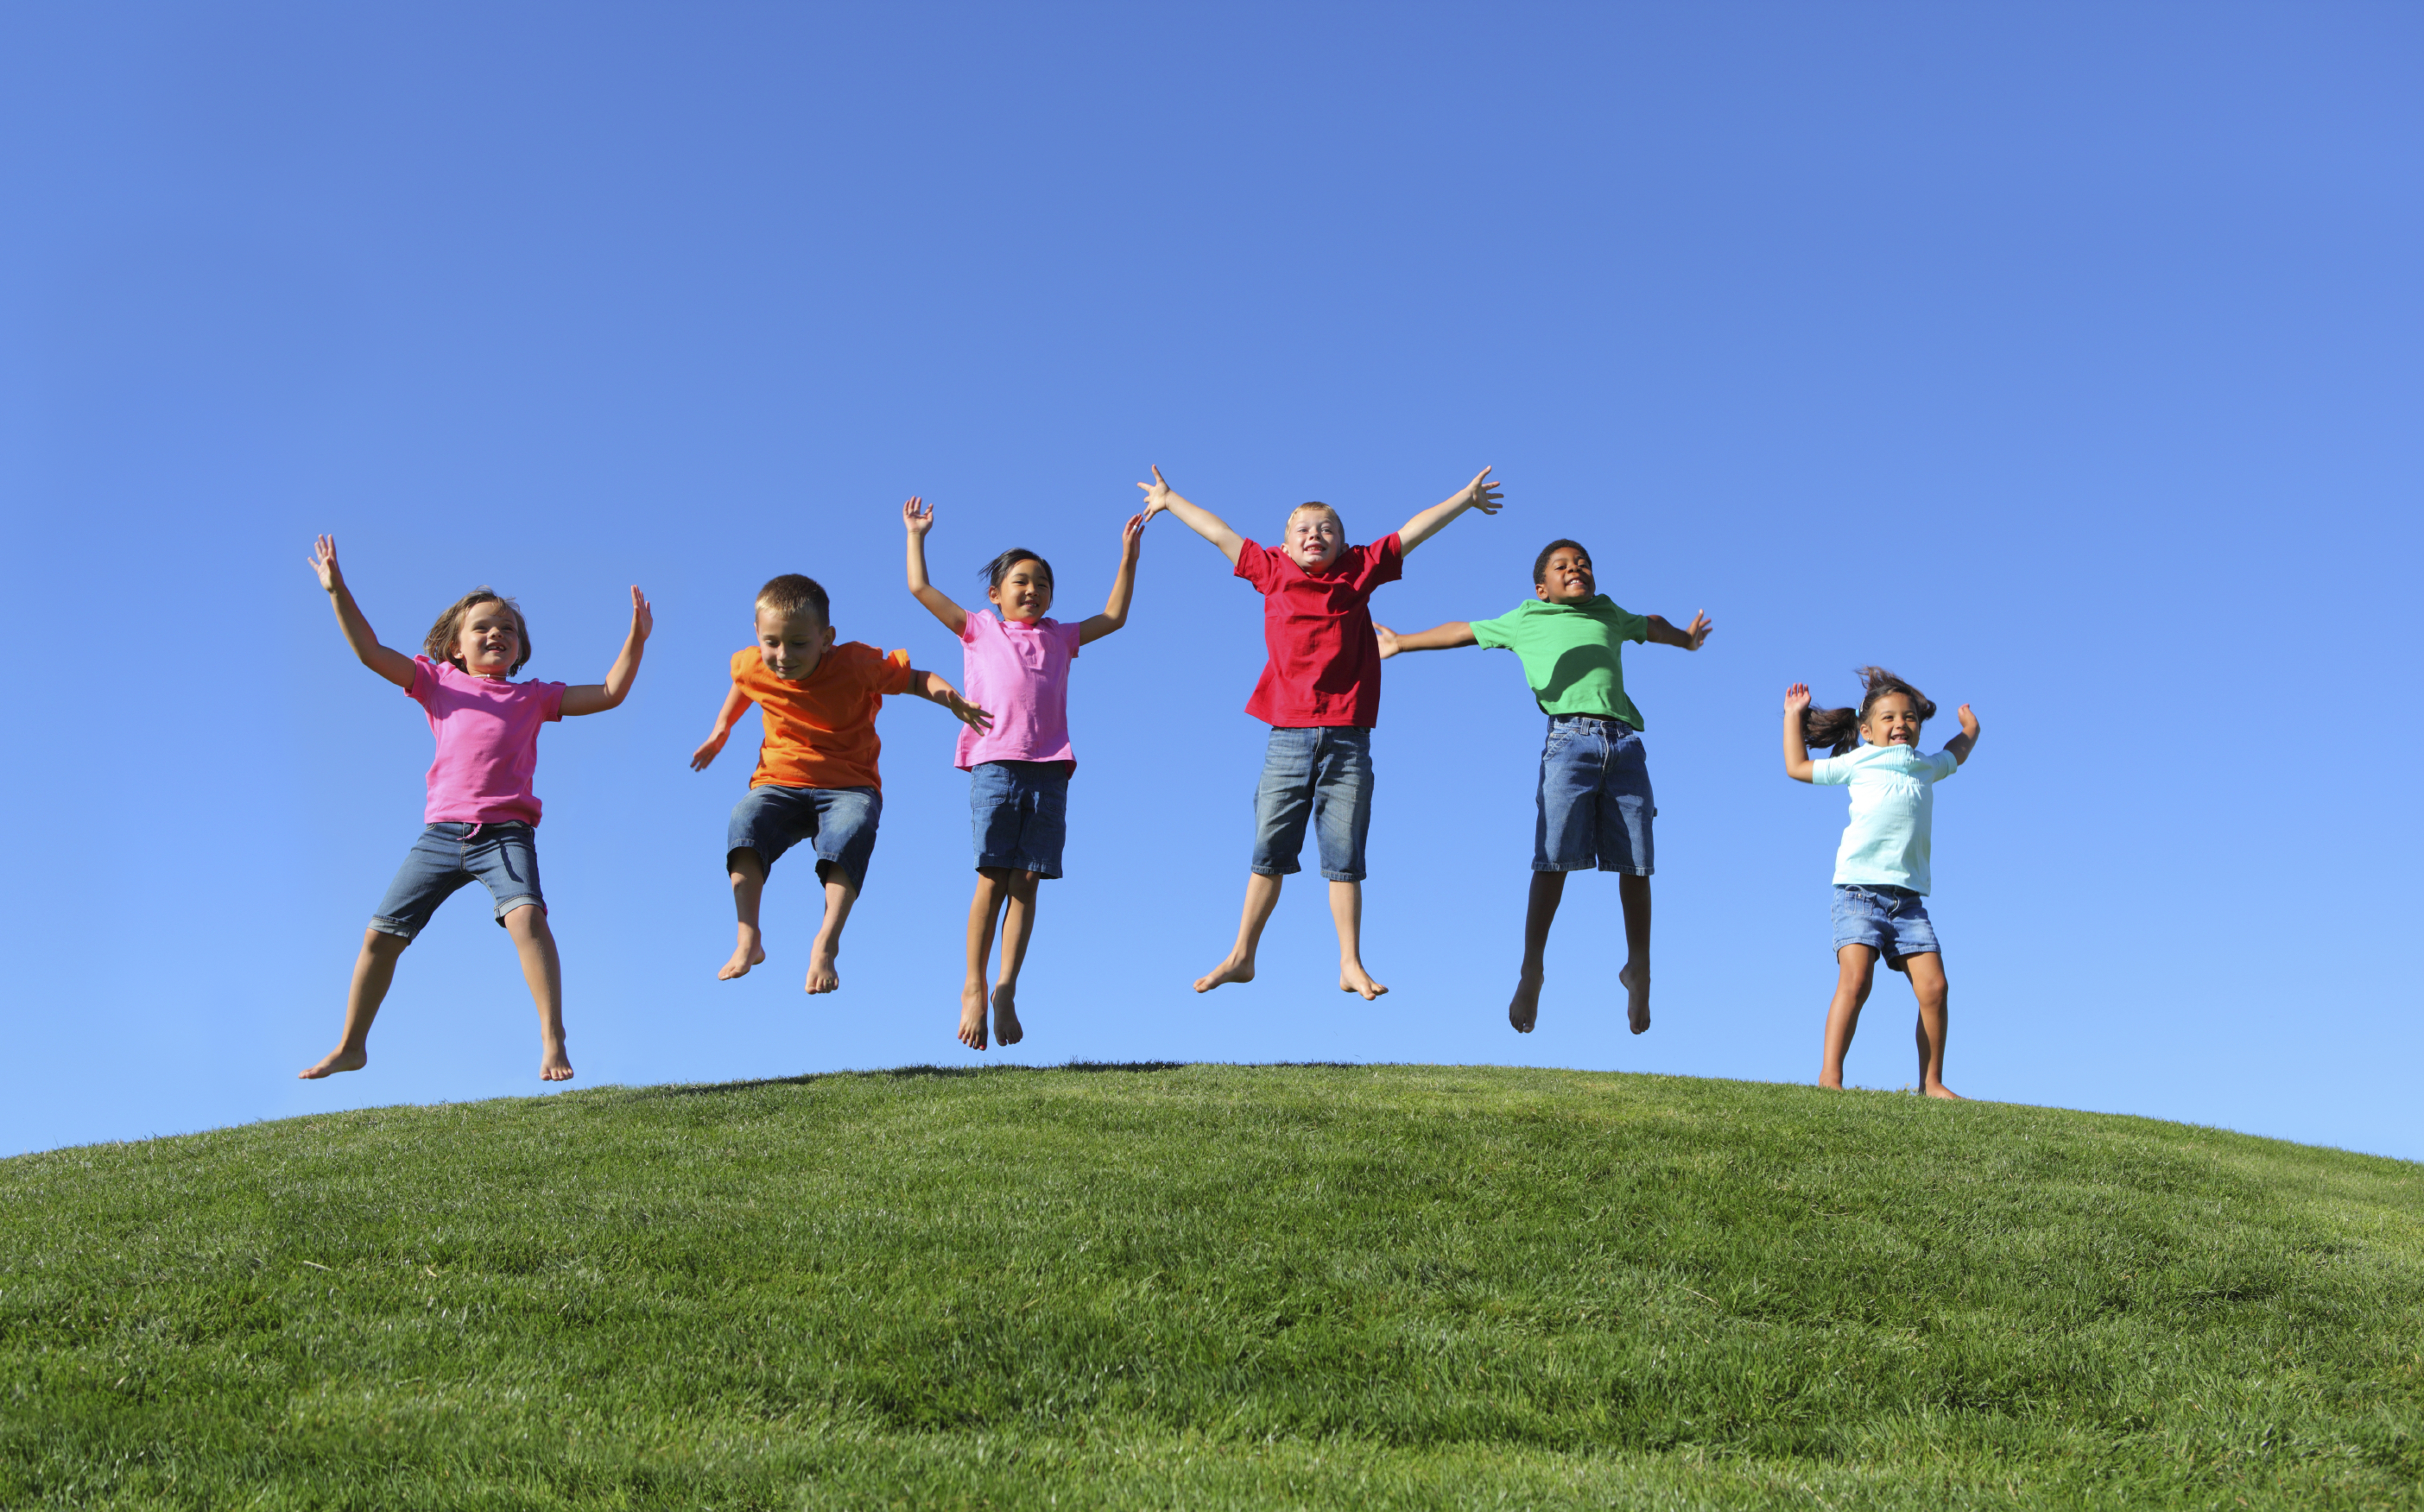 Do you enjoy playing sports. Дети в прыжке. Радостные дети. Здоровые счастливые дети. Счастливые дети в прыжке.